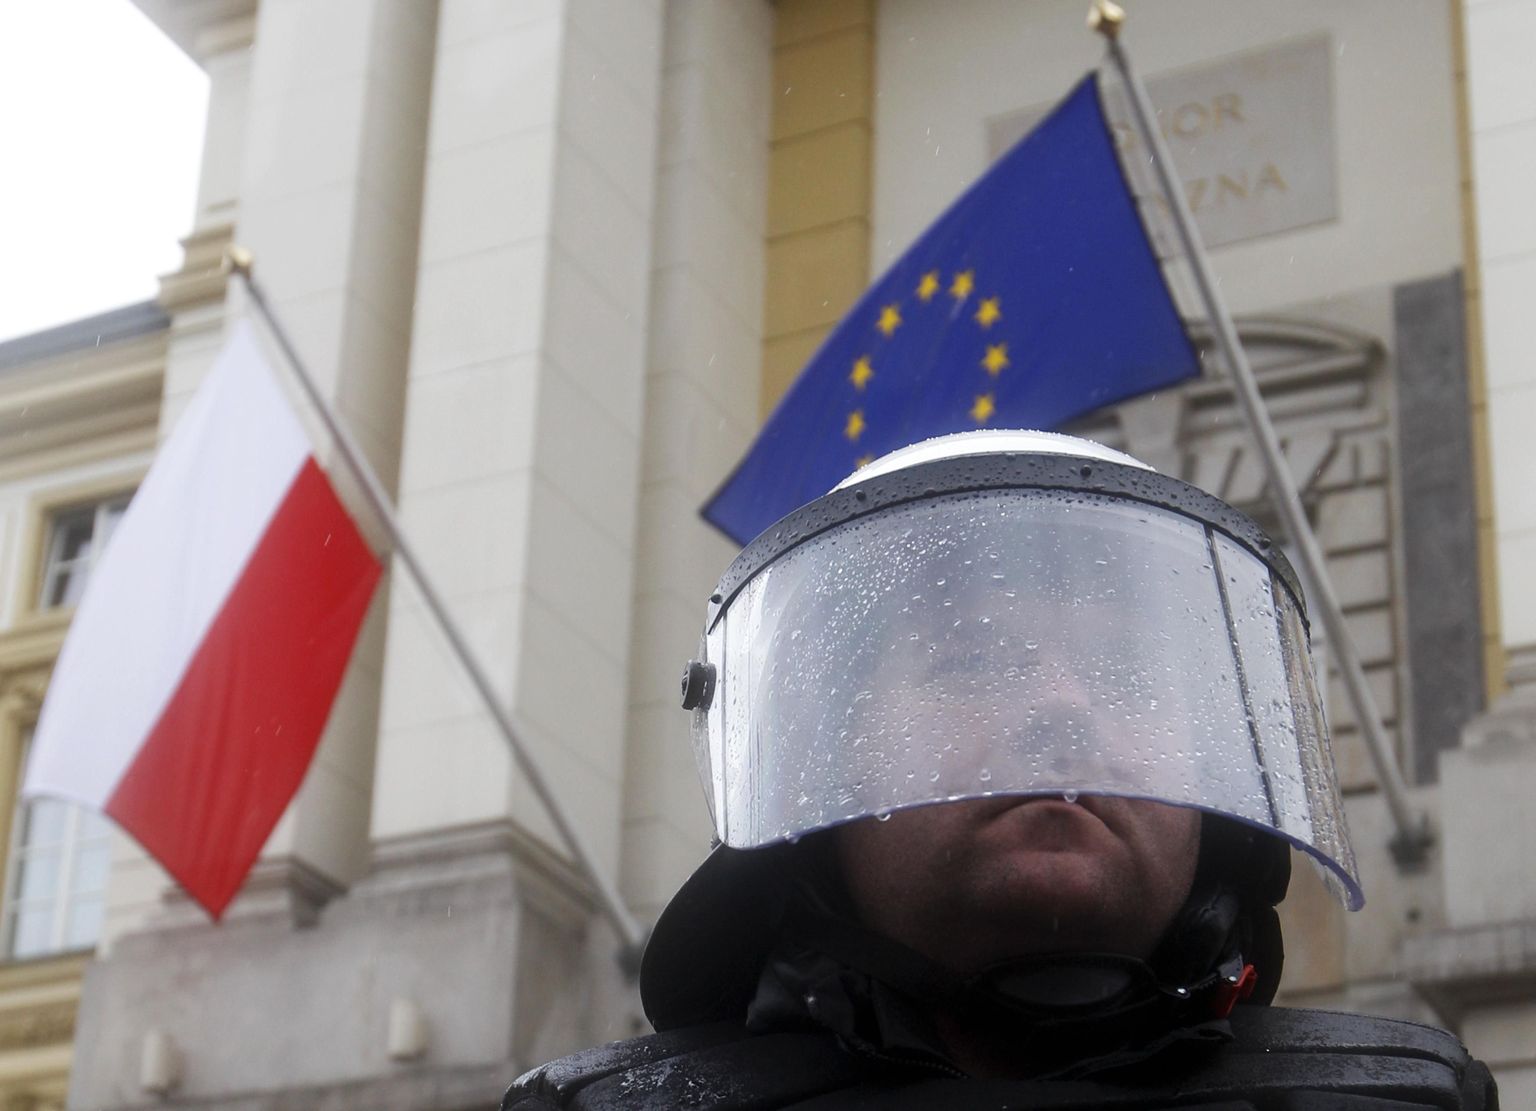 Poola ei ole nõus Euroopa finantsreformiedga